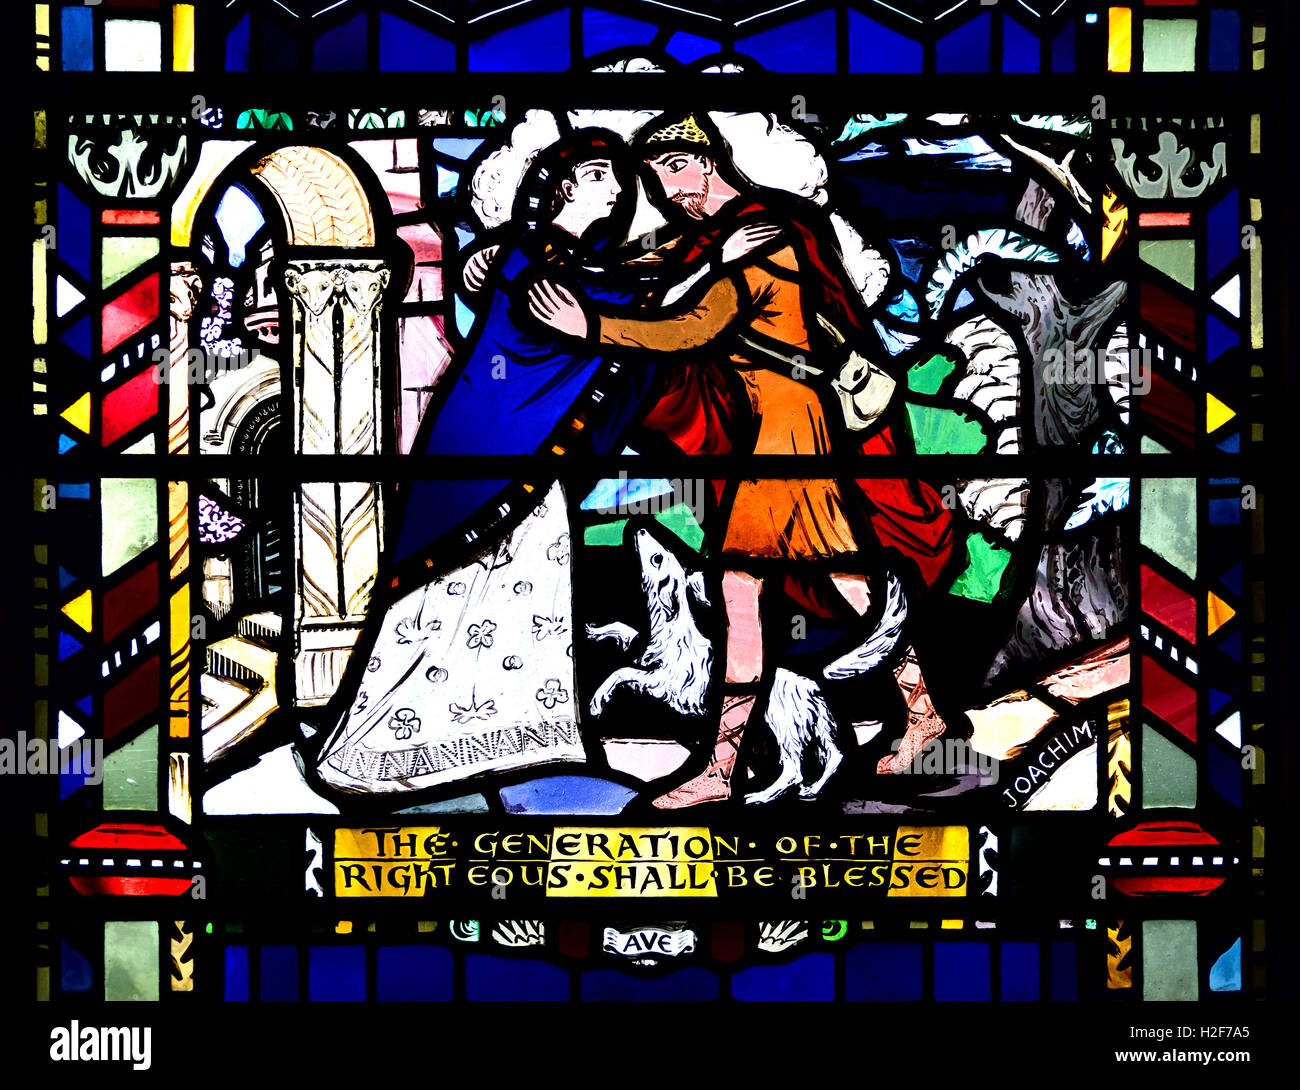 Londres, Angleterre, Royaume-Uni. L'église St Etheldreda à Ely Place. Vitrail : Psaume 112 'La génération des justes... Banque D'Images